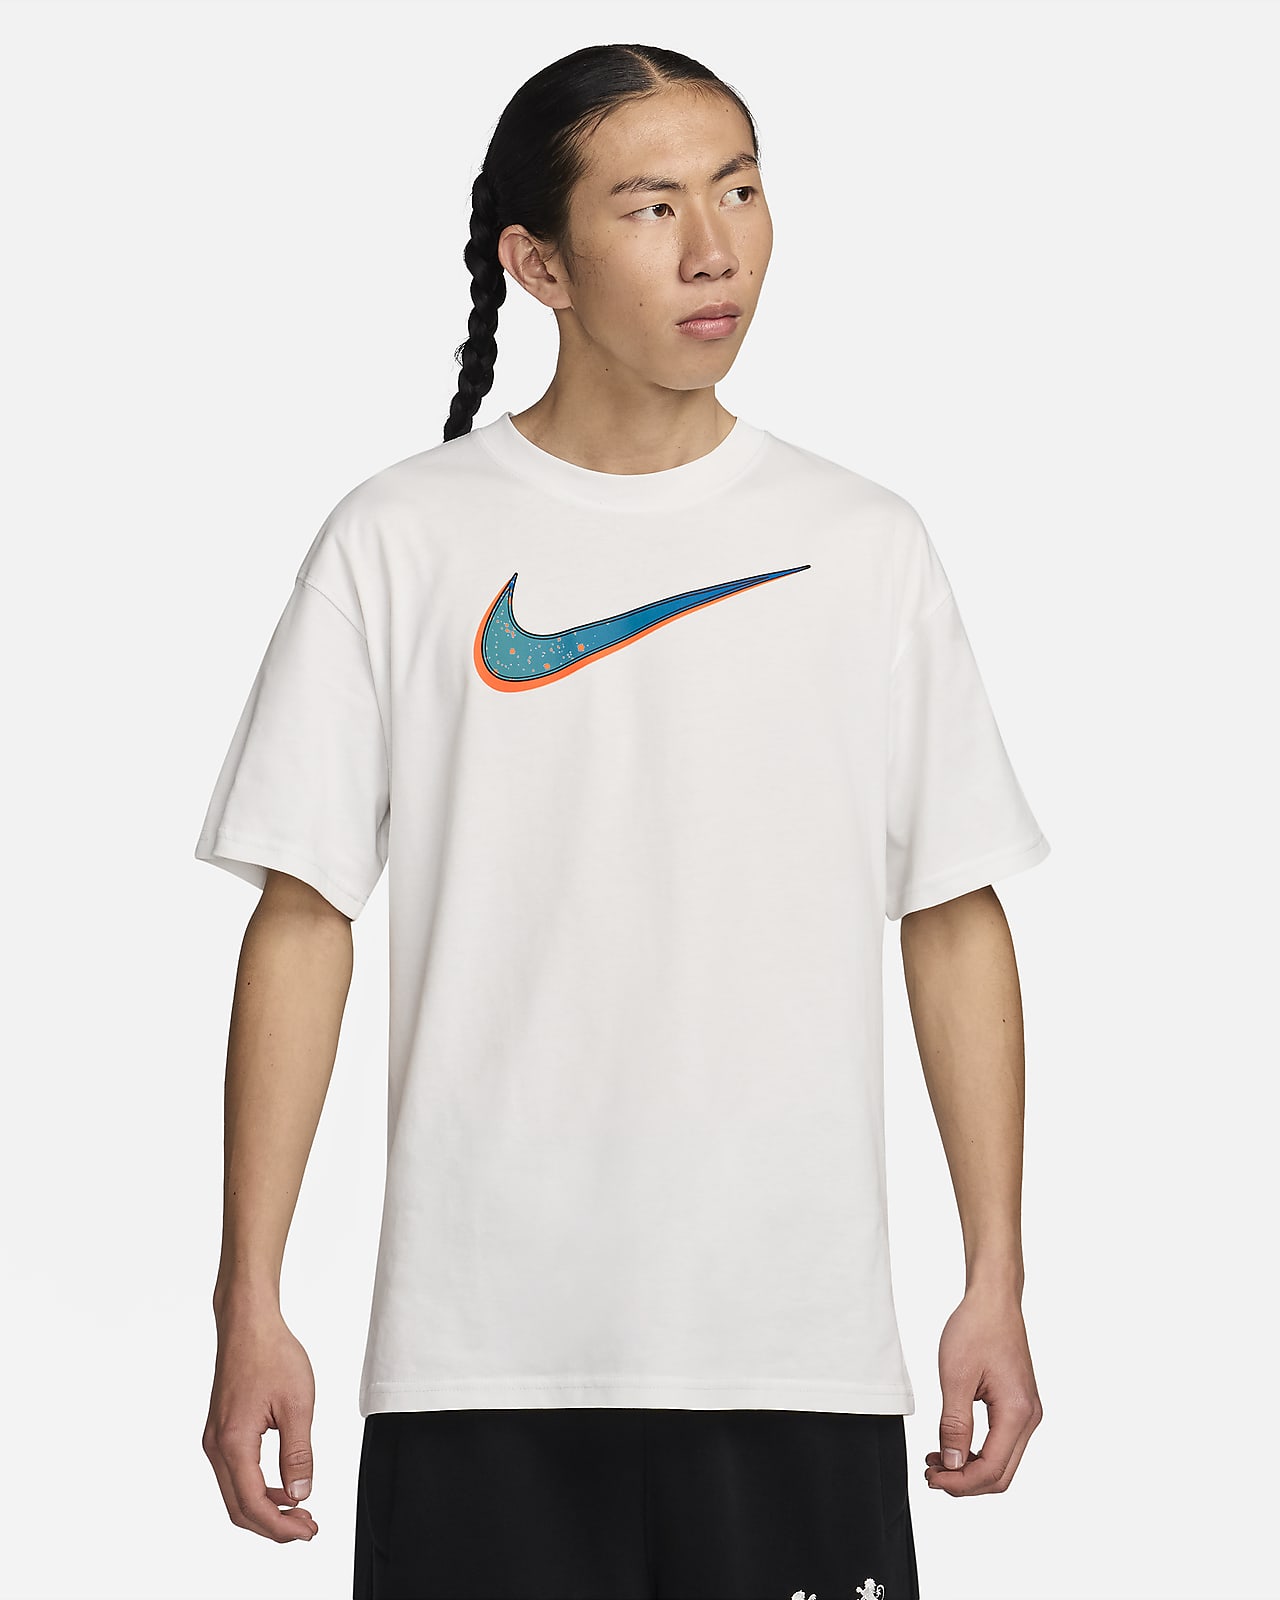 レブロン メンズ M90 バスケットボール Tシャツ